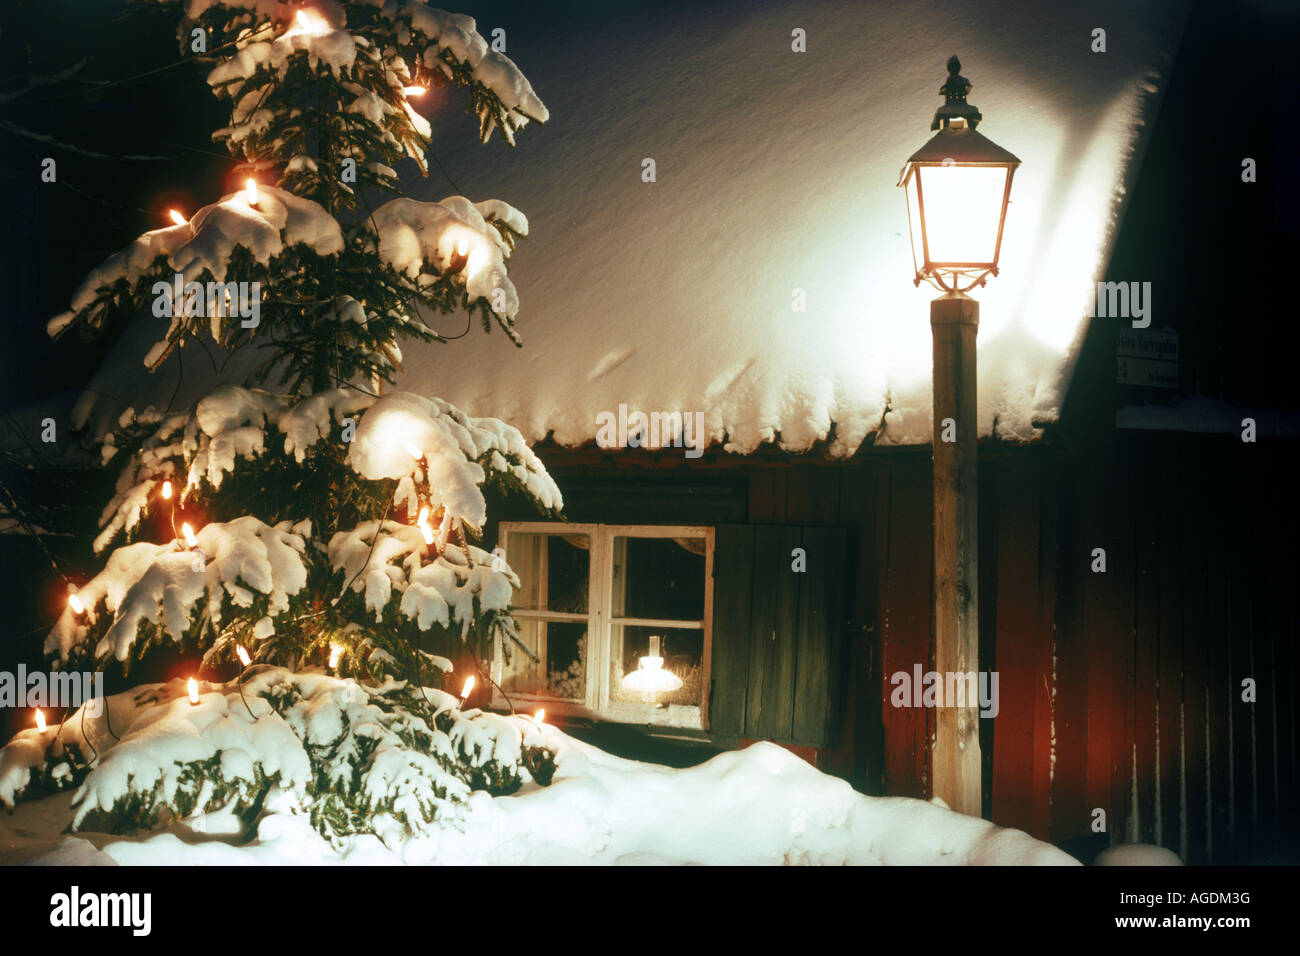 Per esterno albero di Natale laden con fresca neve caduti accanto alla vecchia strada lampada incandescente di notte nella Città Vecchia di Stoccolma, Svezia Foto Stock